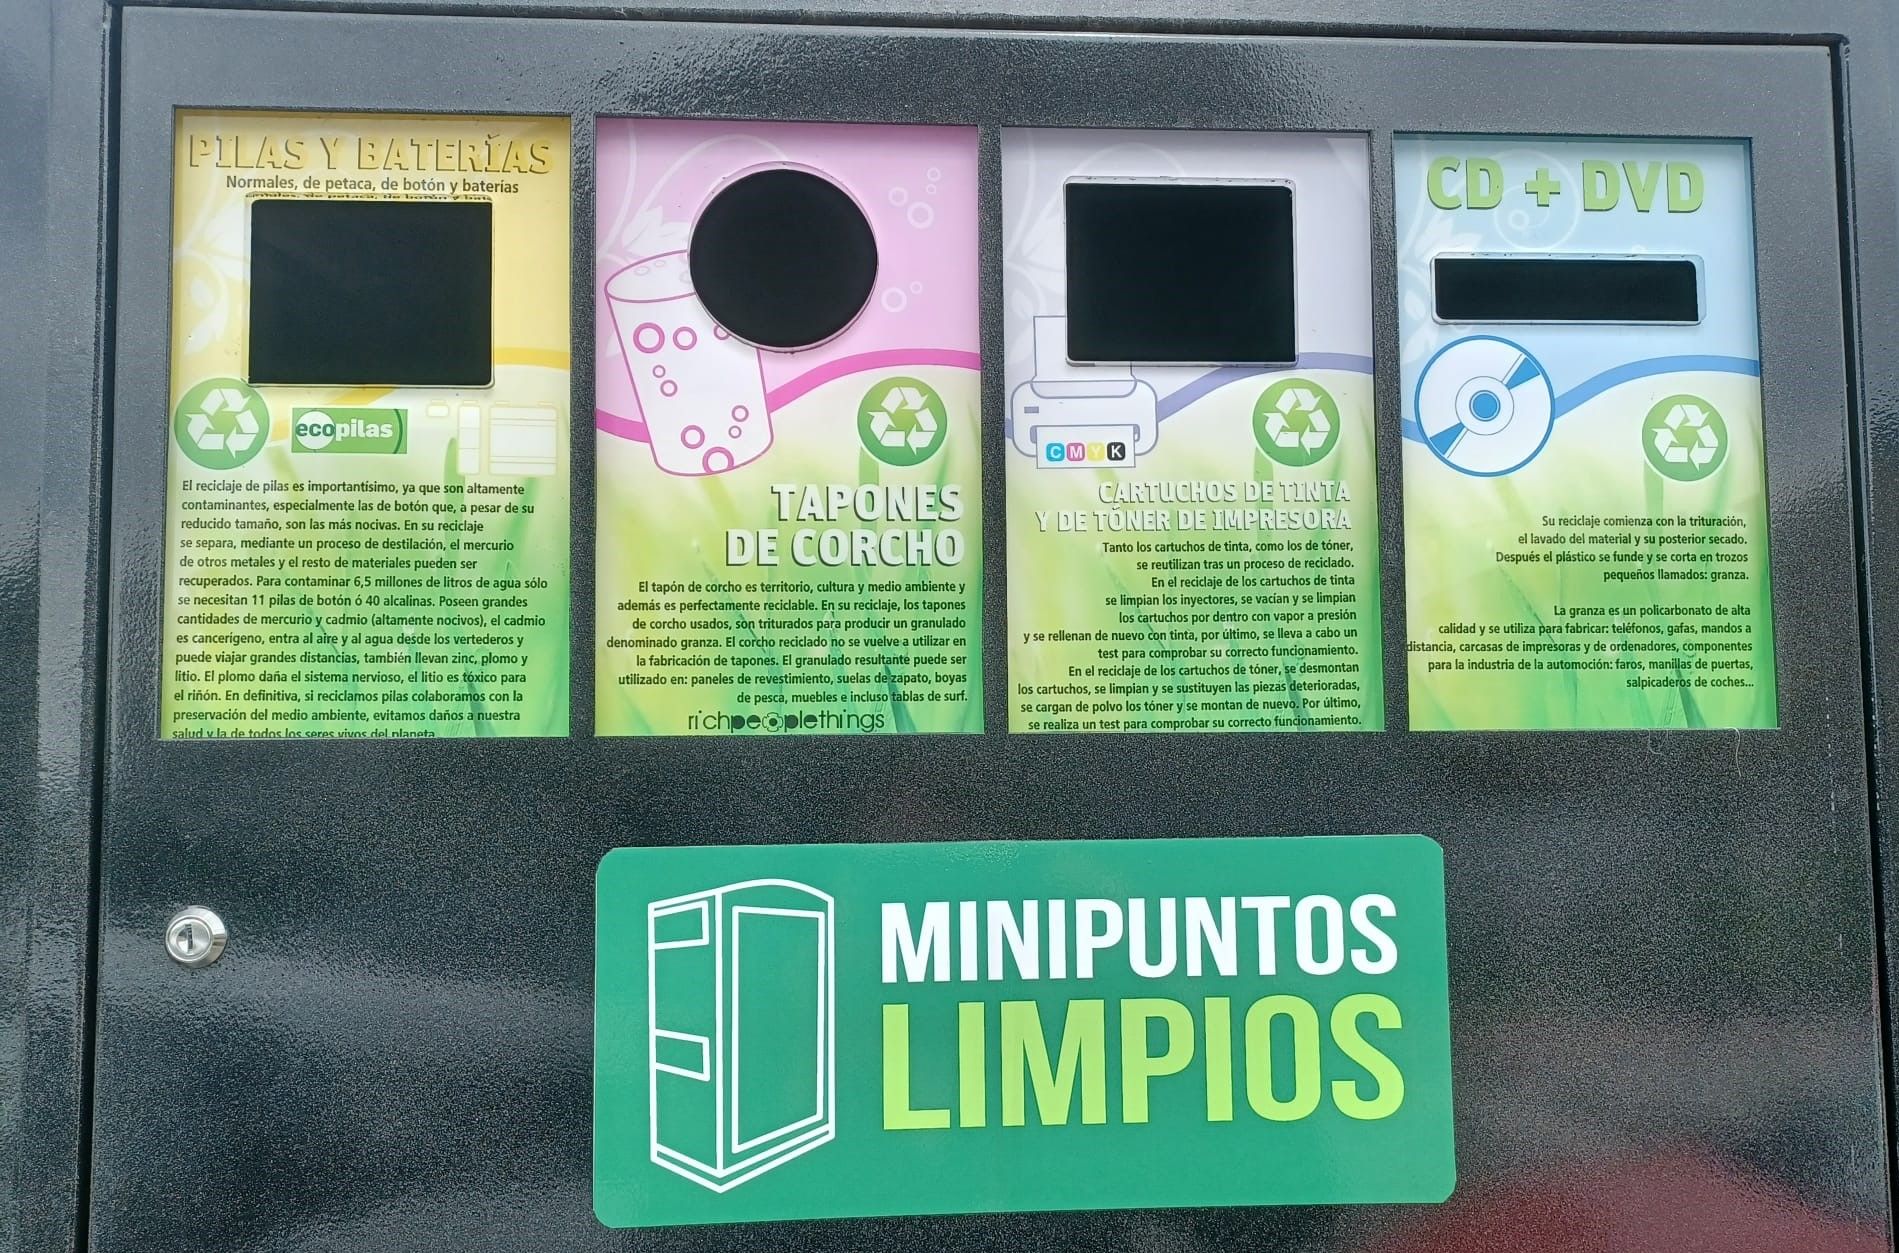 Discos, cápsulas de café, corchos o bombillas: así son los minipuntos limpios de reciclaje de Llanera